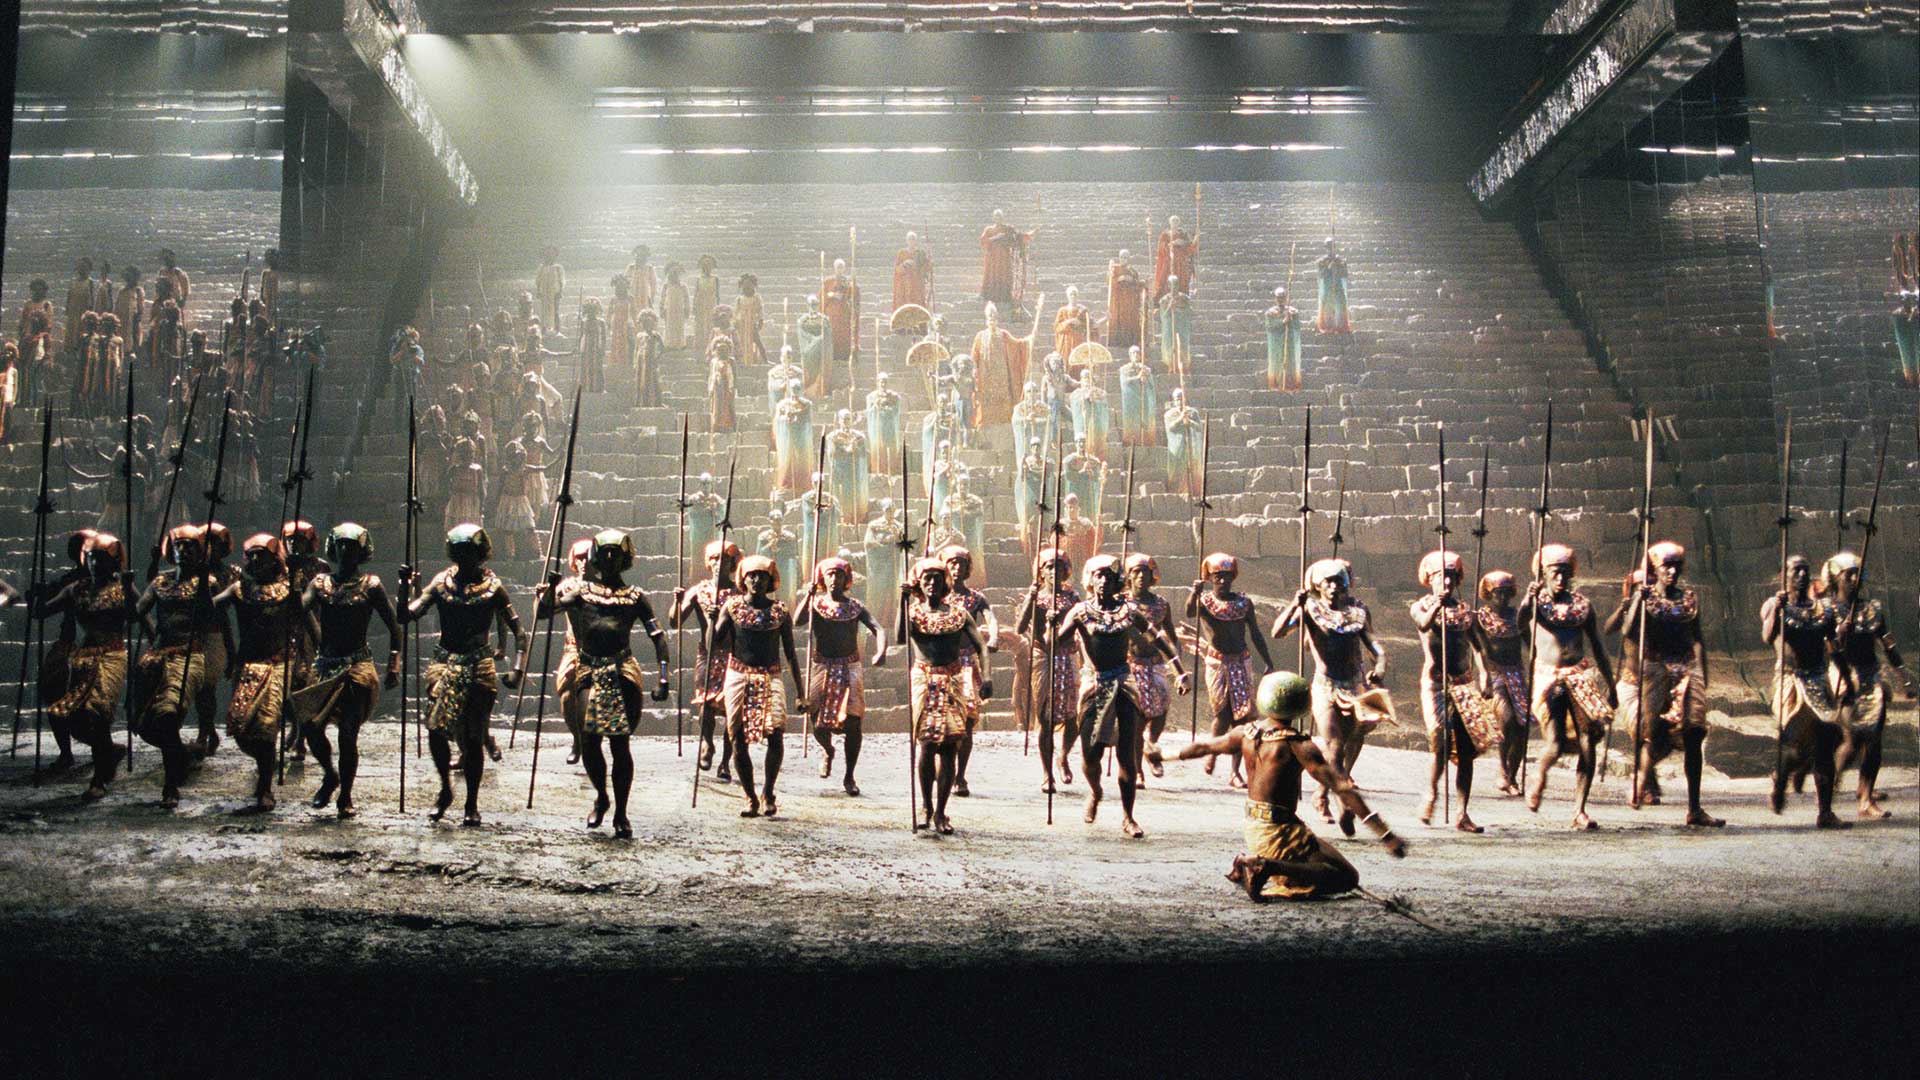 La imponente 'Aída' regresa al Teatro Real 20 años después